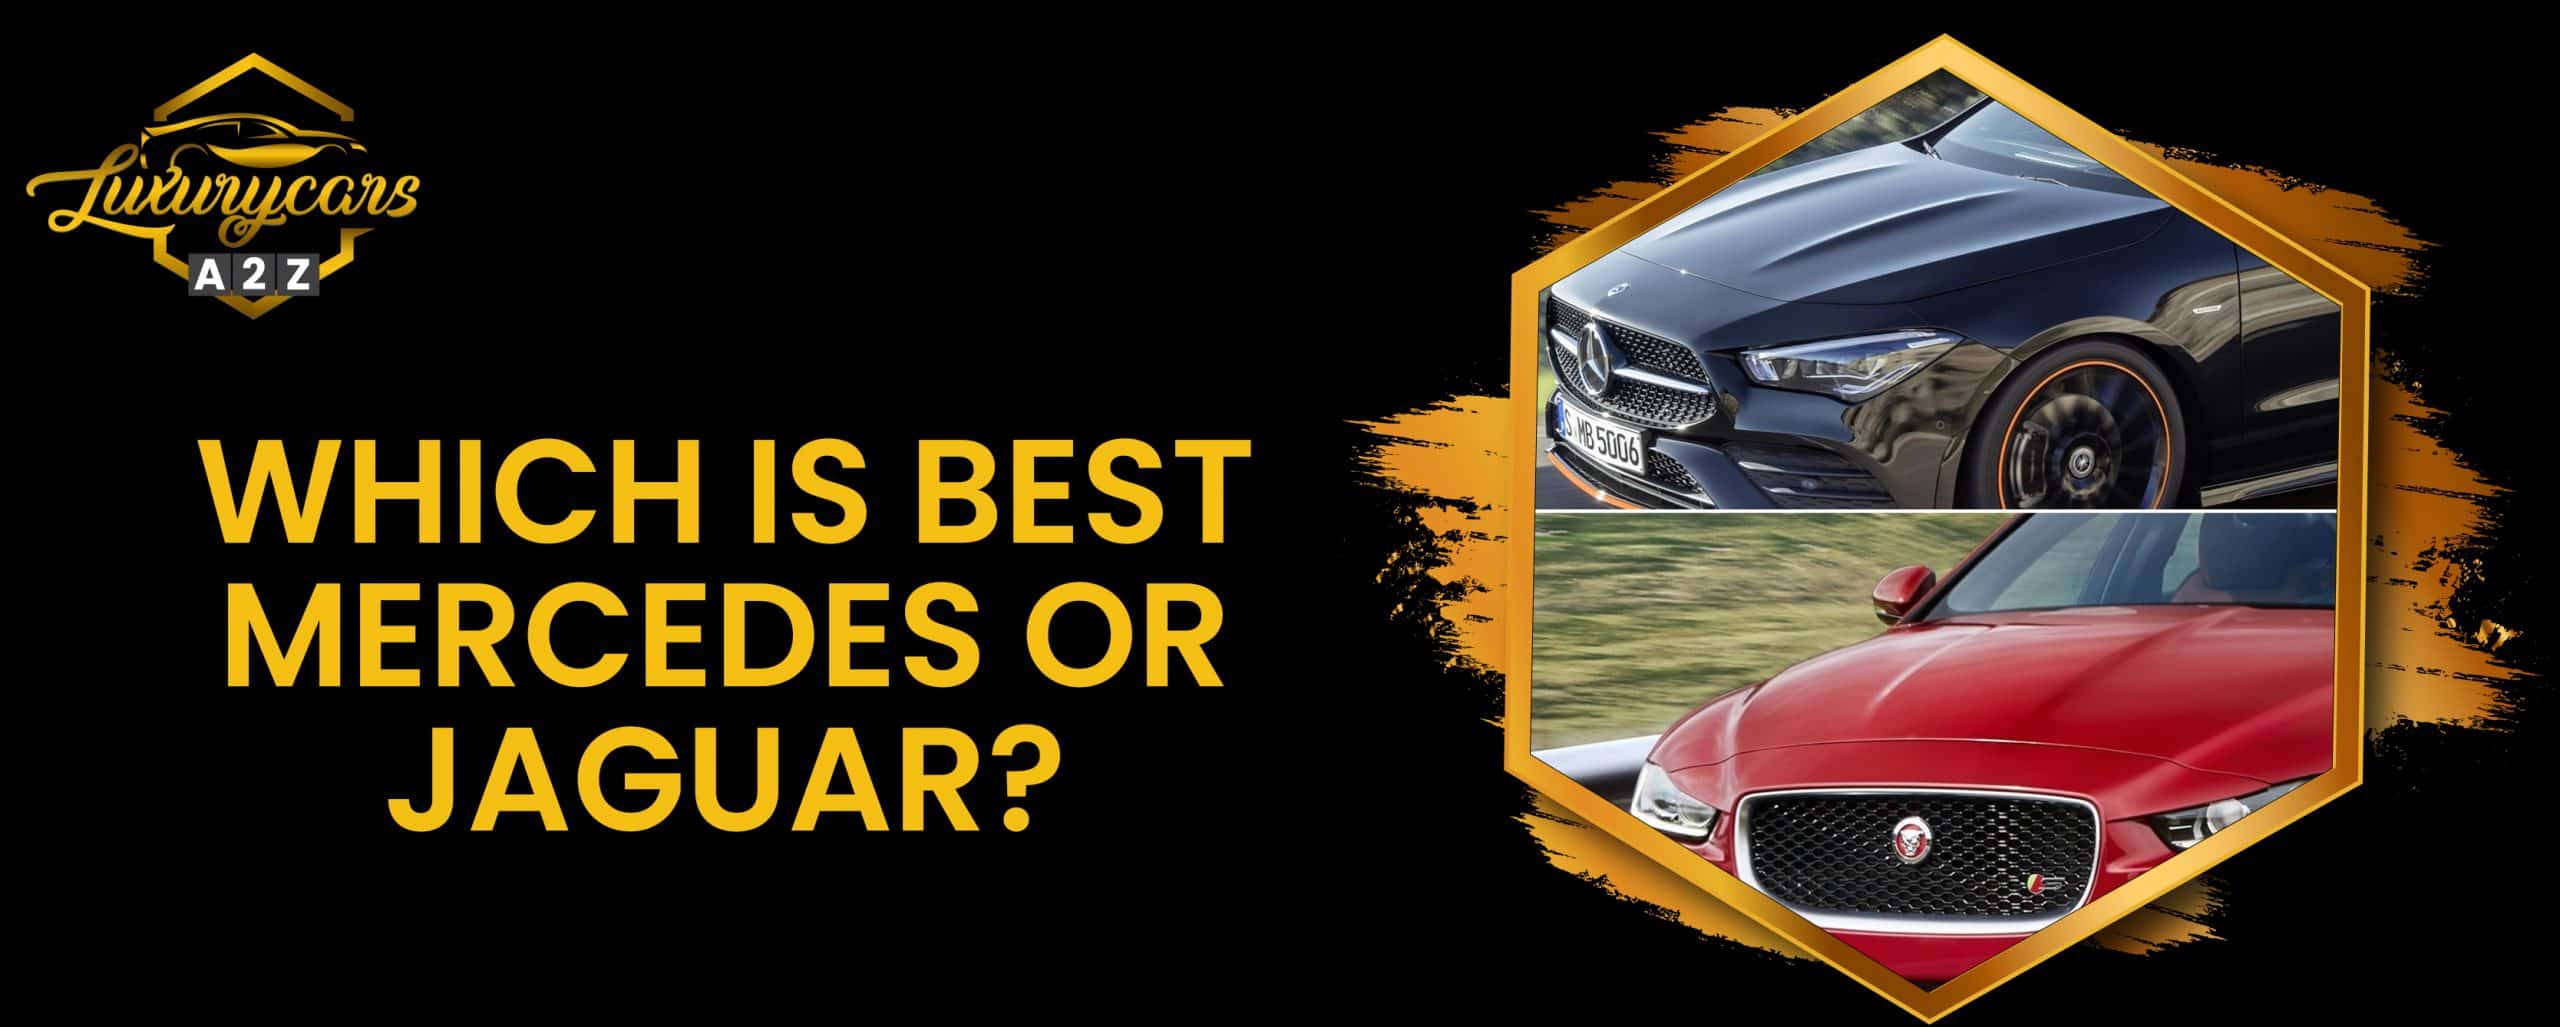 Qu'est-ce qui est le mieux, Mercedes ou Jaguar ?